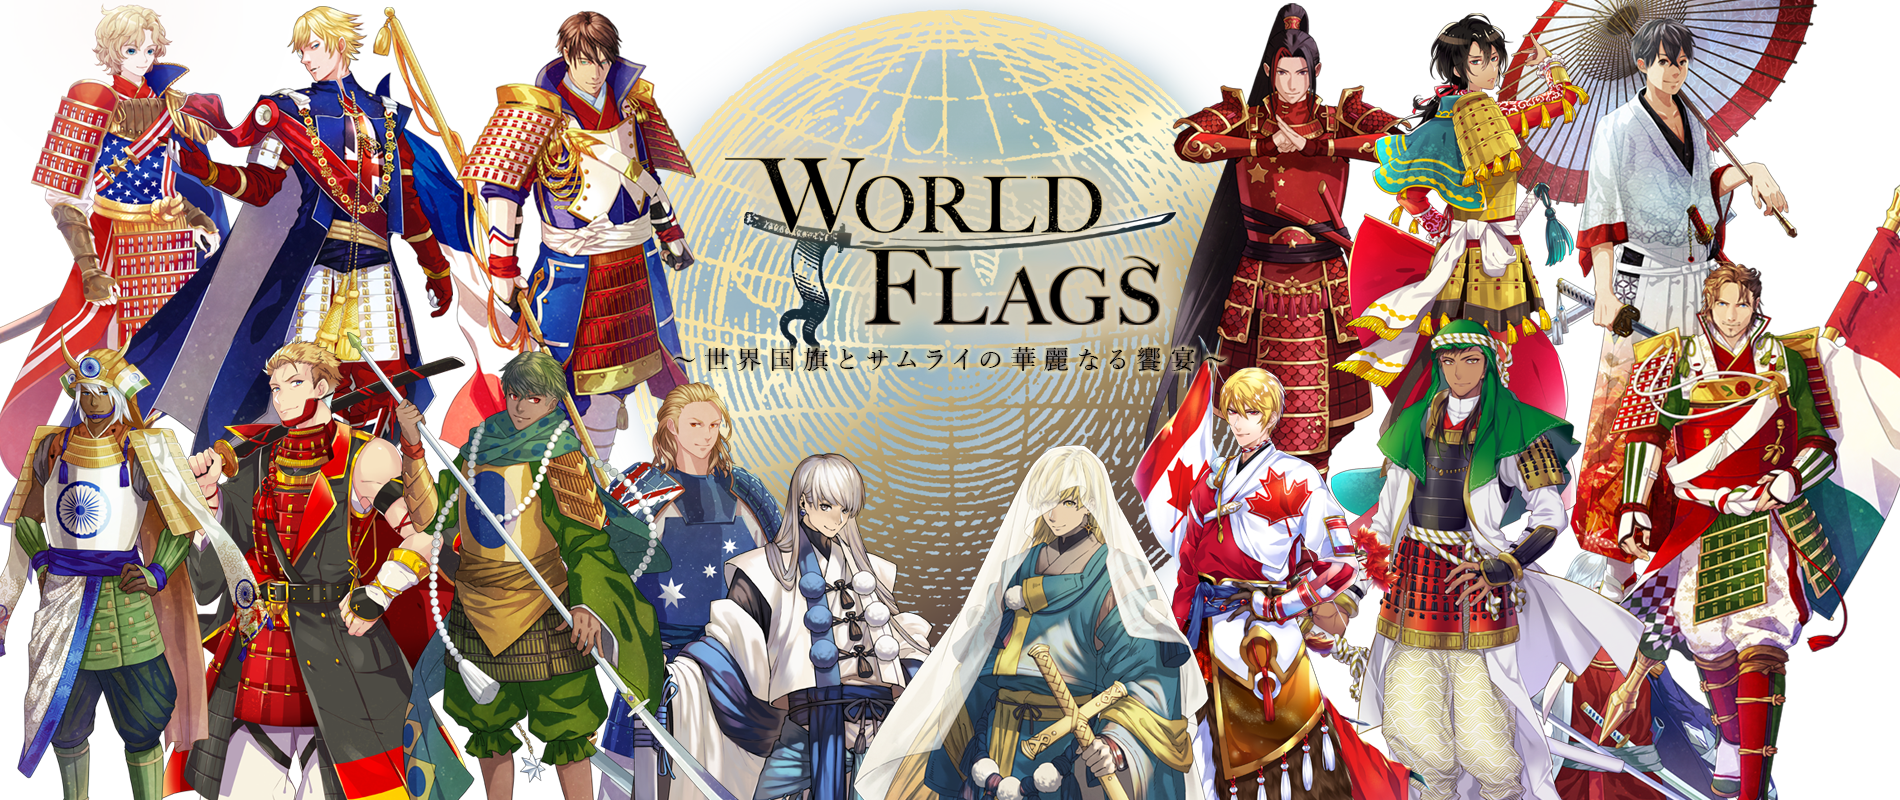 世界を席巻した国旗サムライのプロジェクト Worldflags 中国アリババグループとパートナーシップ契約を締結 Digital Entertainment Asset Pte Ltdのプレスリリース